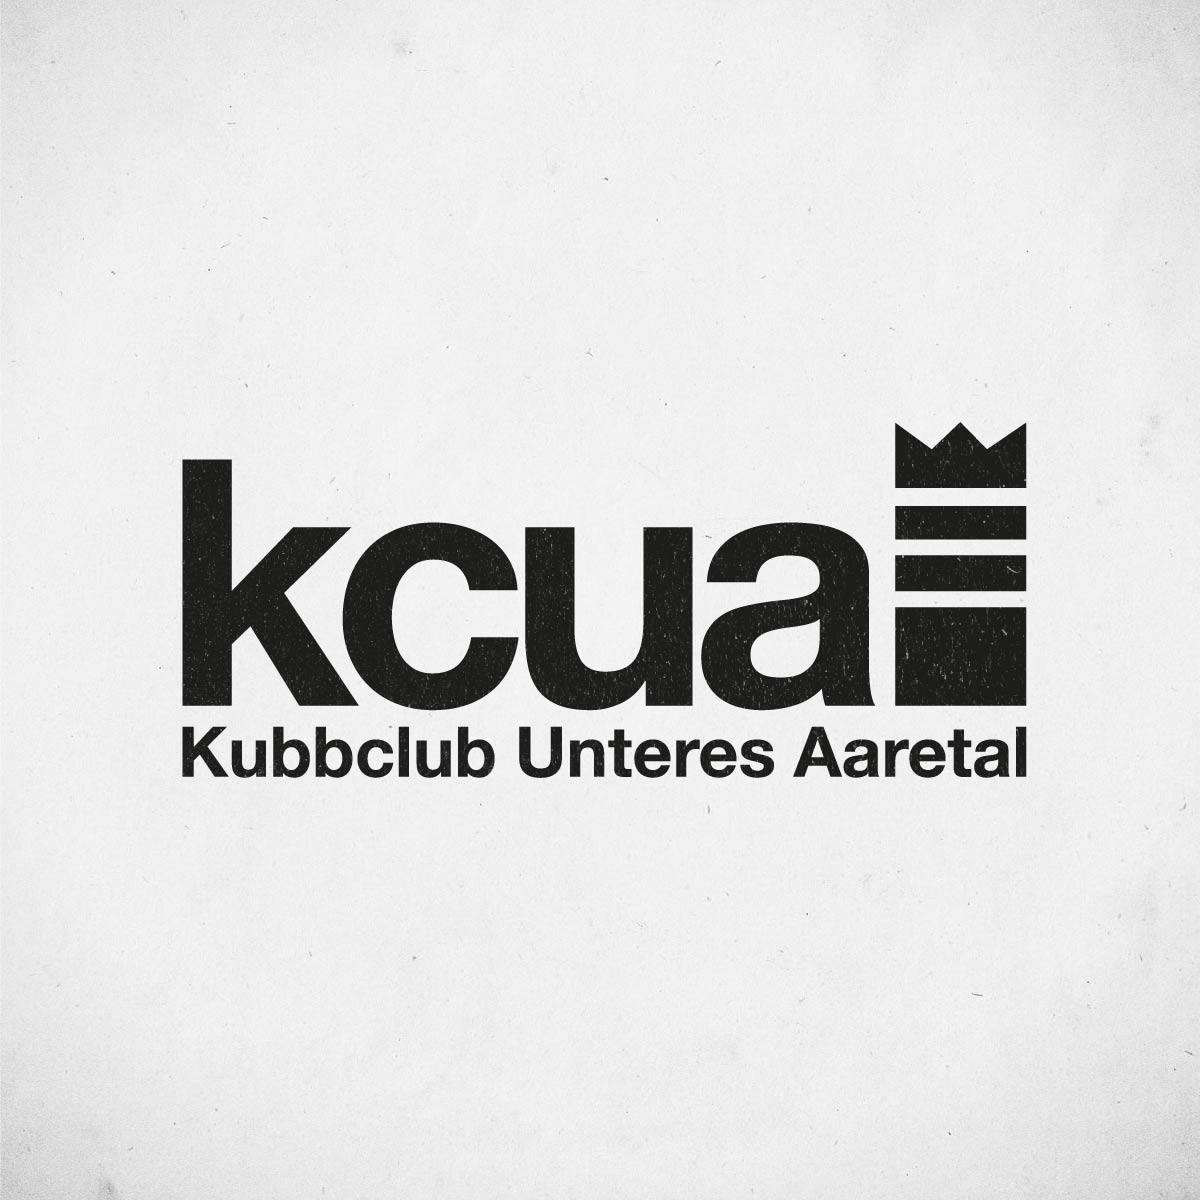 KCUA-Kubbclub Unteres Aaretal